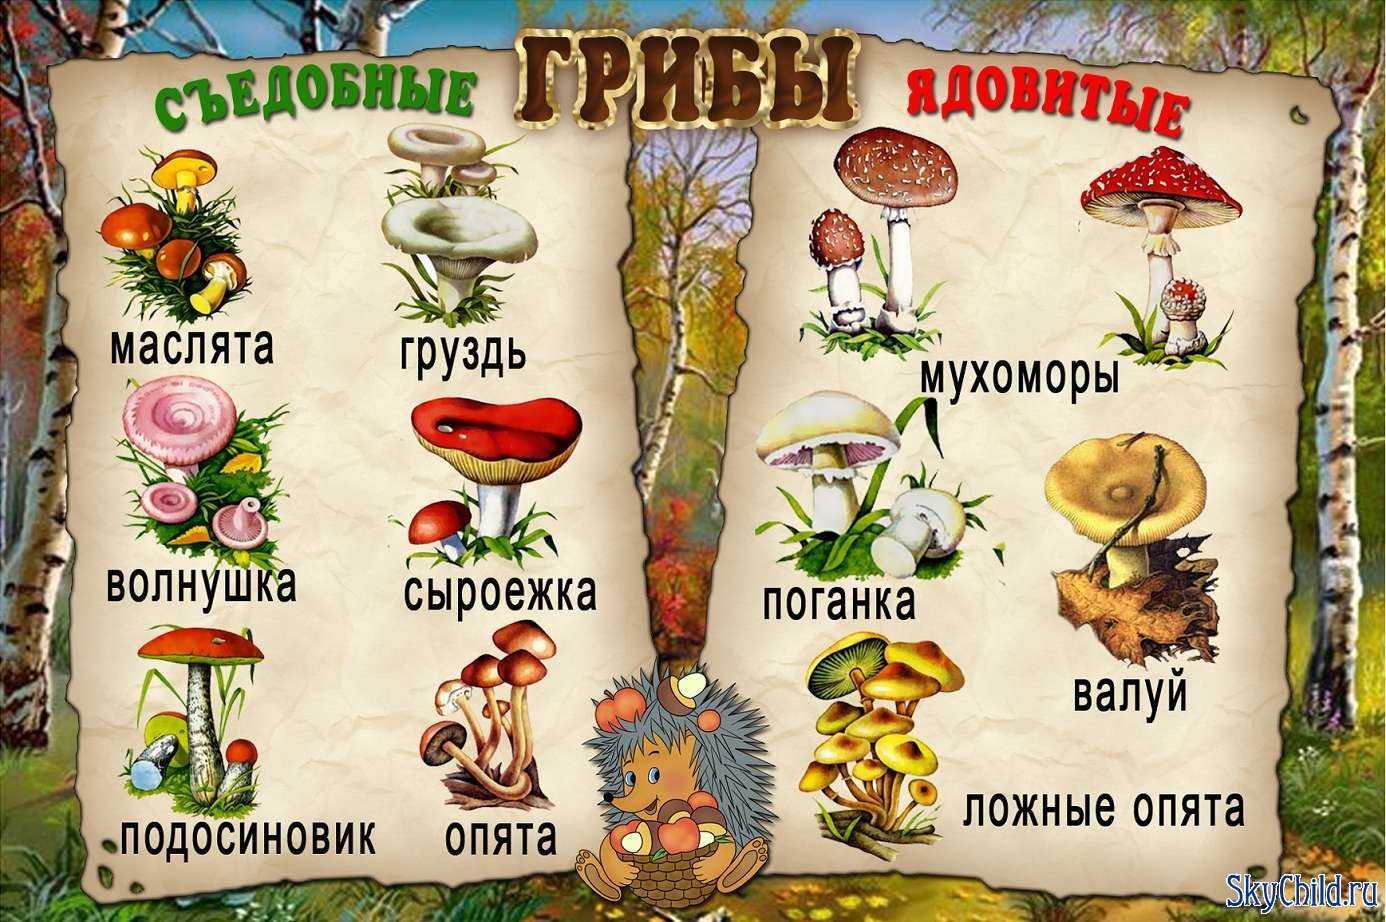 Съедобные грибы: описания и виды